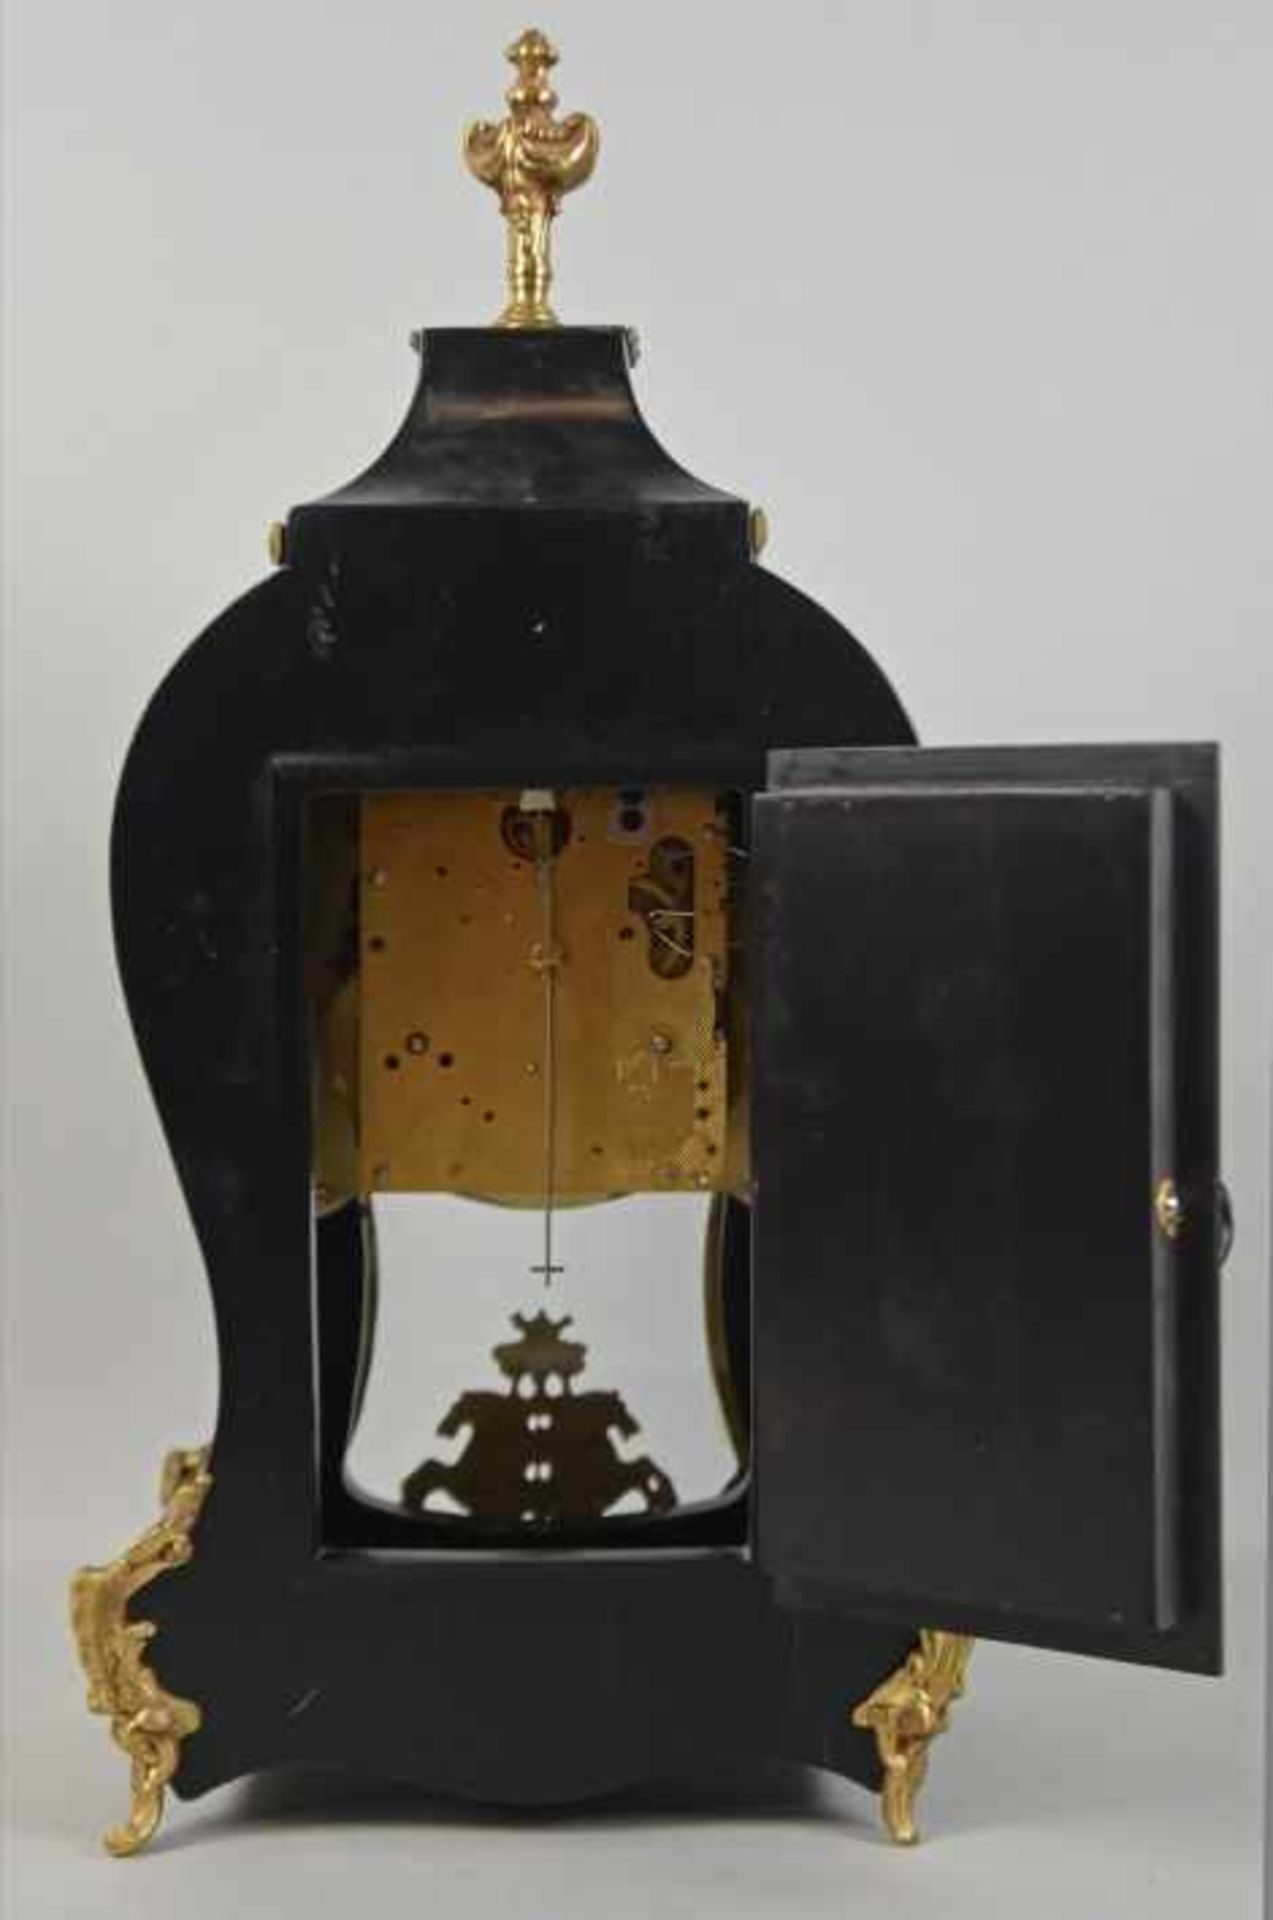 BOULLE-TISCHUHR geschwungene Pendule mit Holzgehäuse in Bloulletechnik mit dekorativen - Bild 4 aus 5